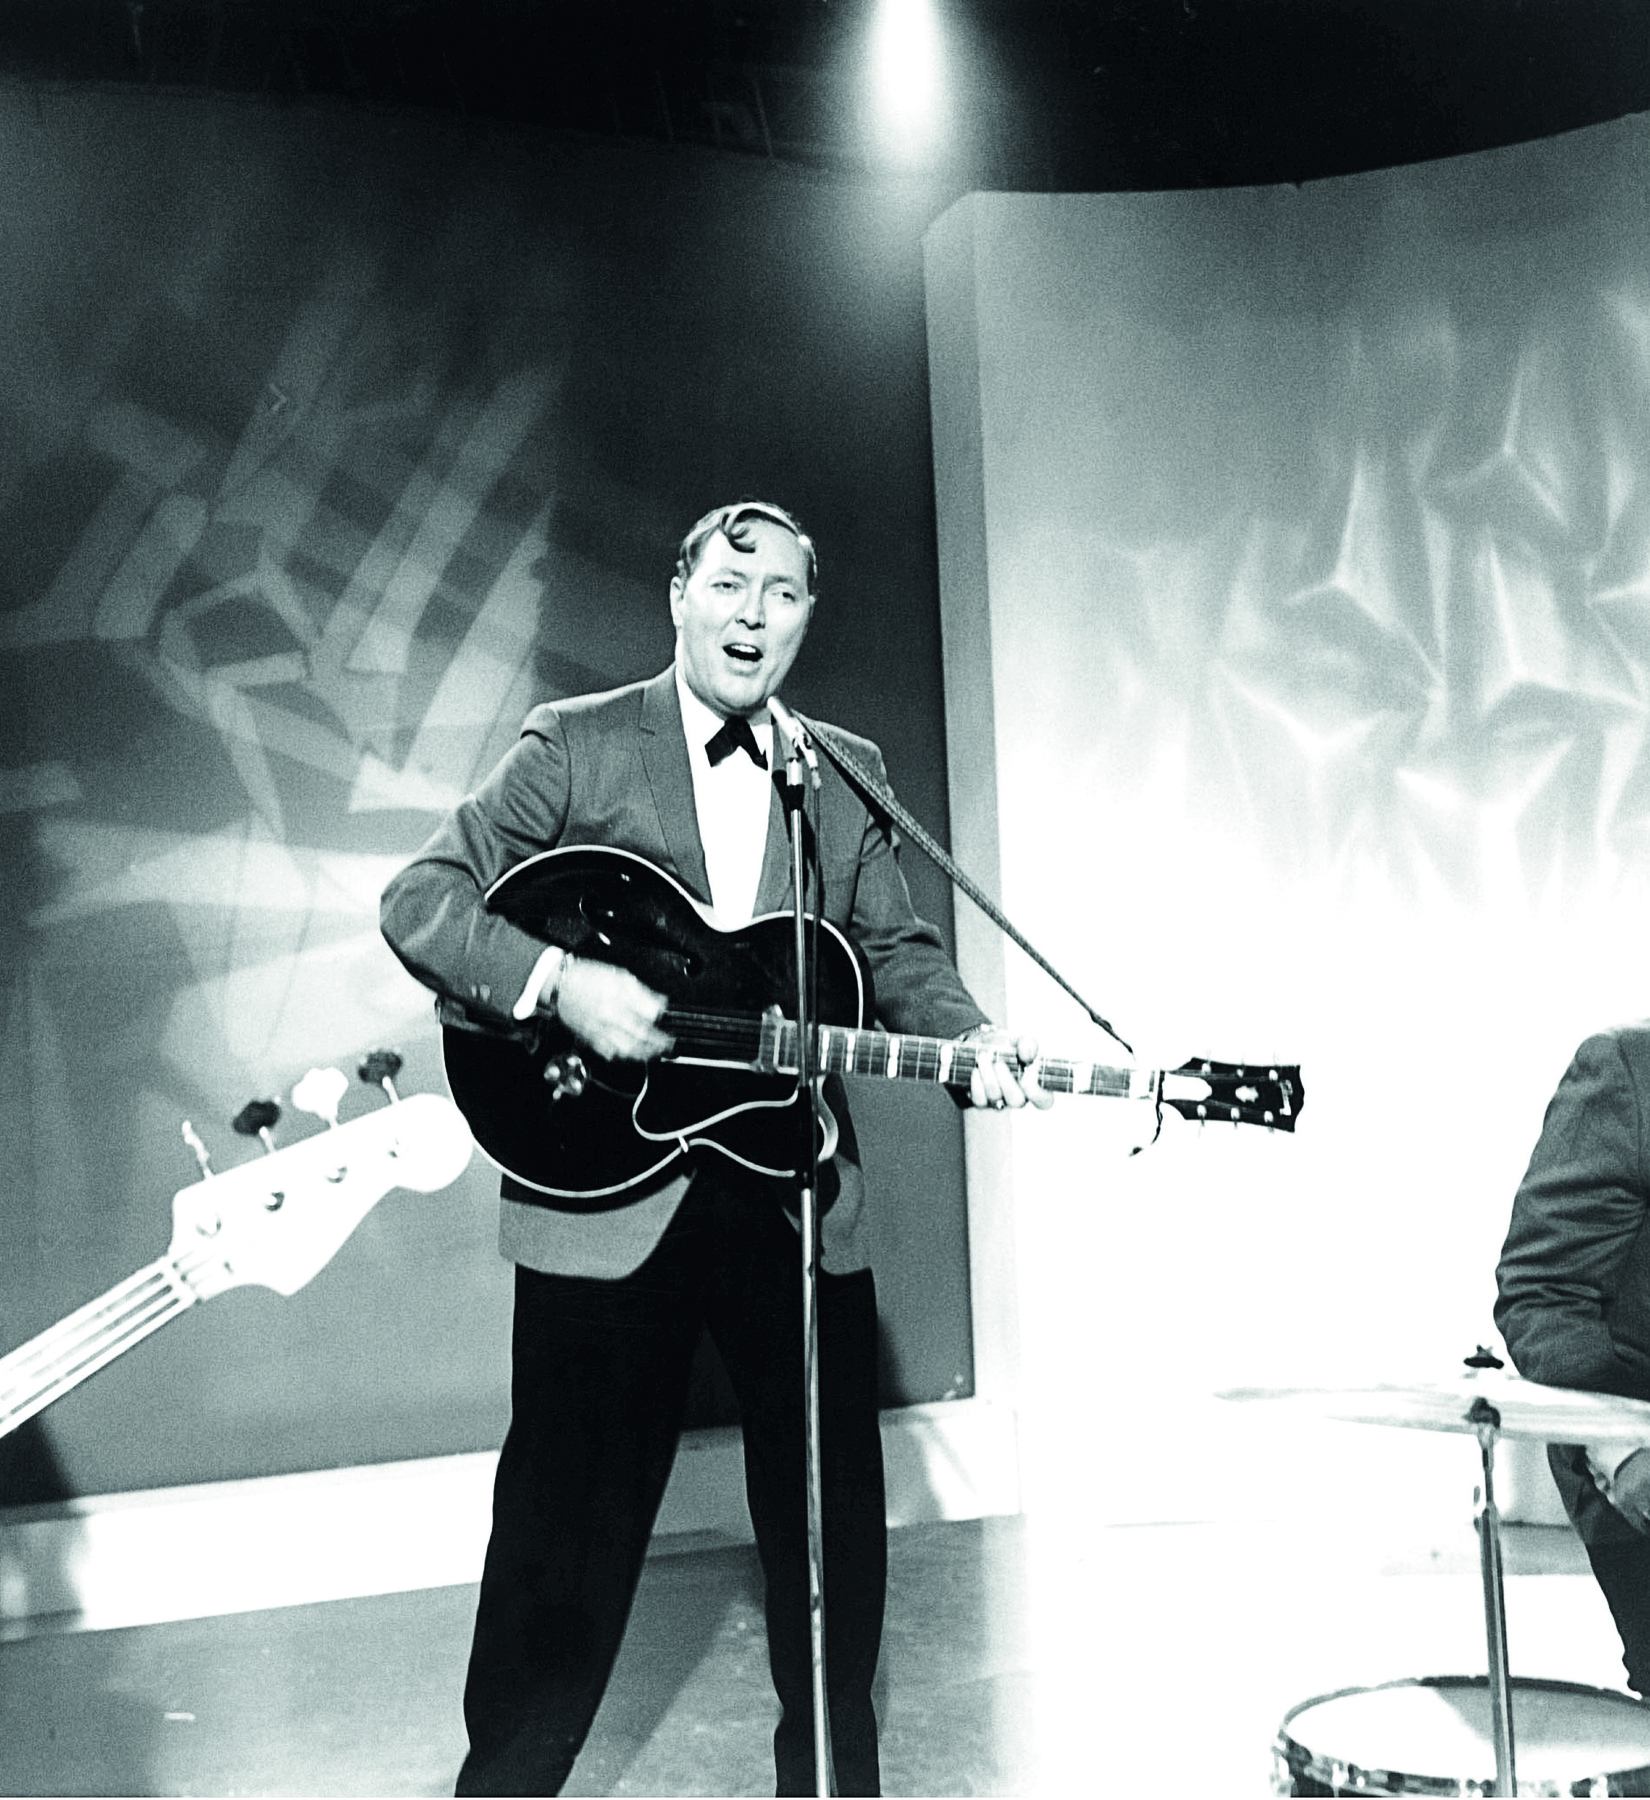 Fotografia em preto e branco. Homem de cabelo curto, vestindo camisa, gravata borboleta e paletó, canta e toca violão com um microfone à frente.